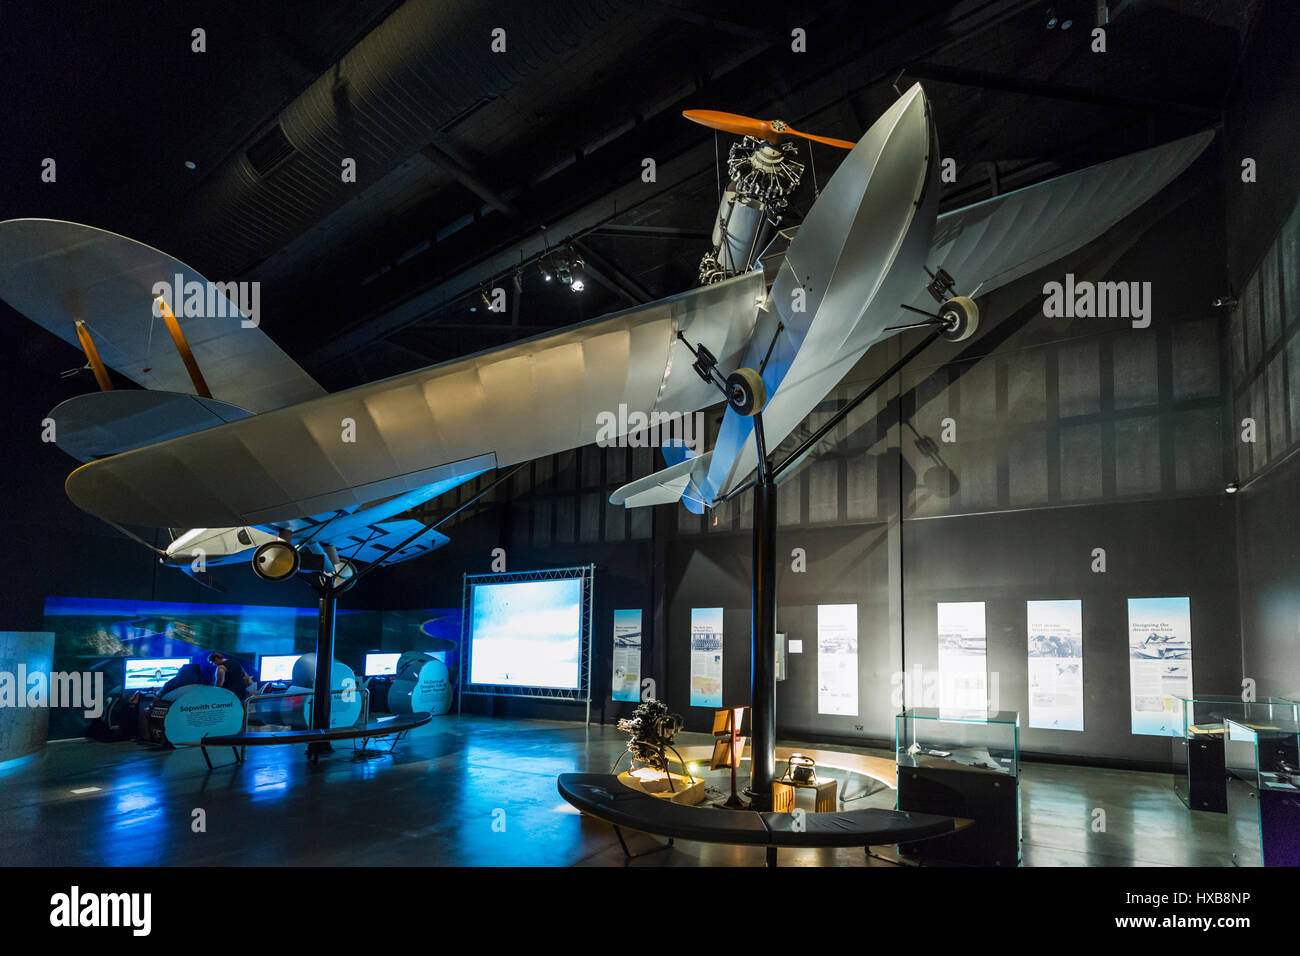 Aéronefs, y compris l'hôtel Ibis de répliques et des expositions interactives à l'intérieur du hall de l'Aviation Hinkler. Bundaberg, Queensland, Australie Banque D'Images